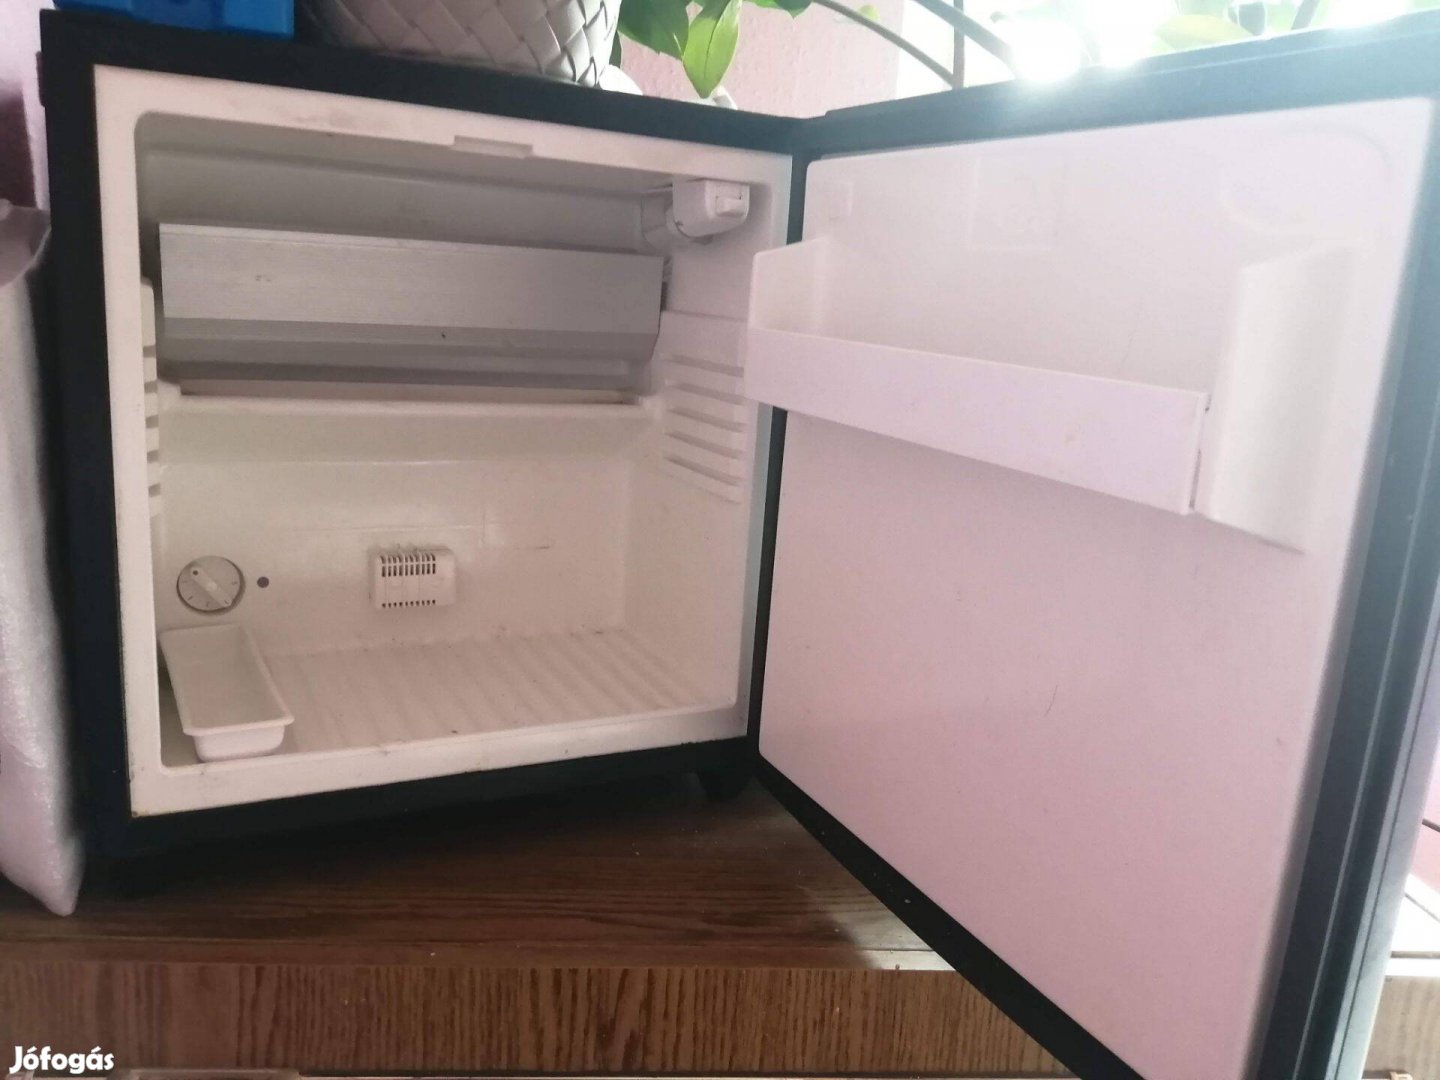 Minibáros hűtő eladó tulajdonostól